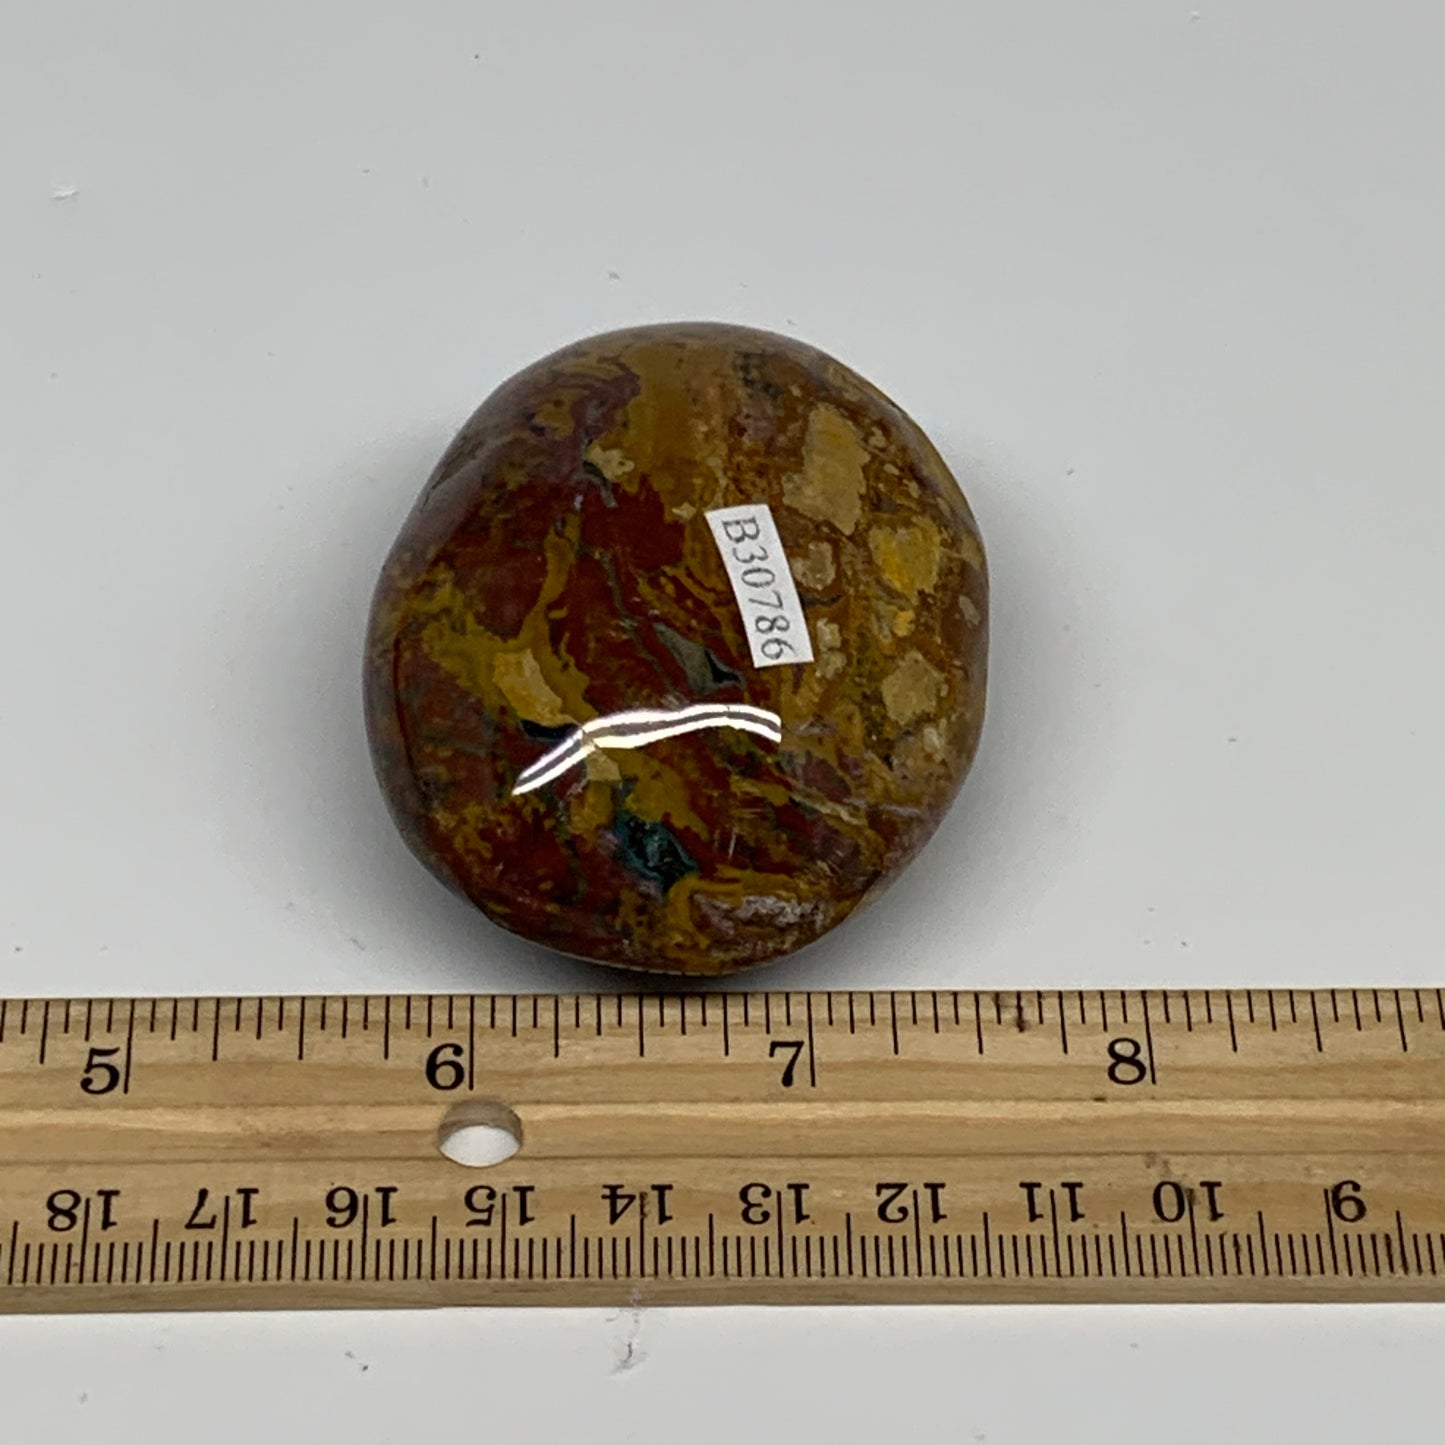 123.1g, 2.4"x1.9"x1.2" Natural Ocean Jasper Palm-Stone Orbicular Jasper, B30786